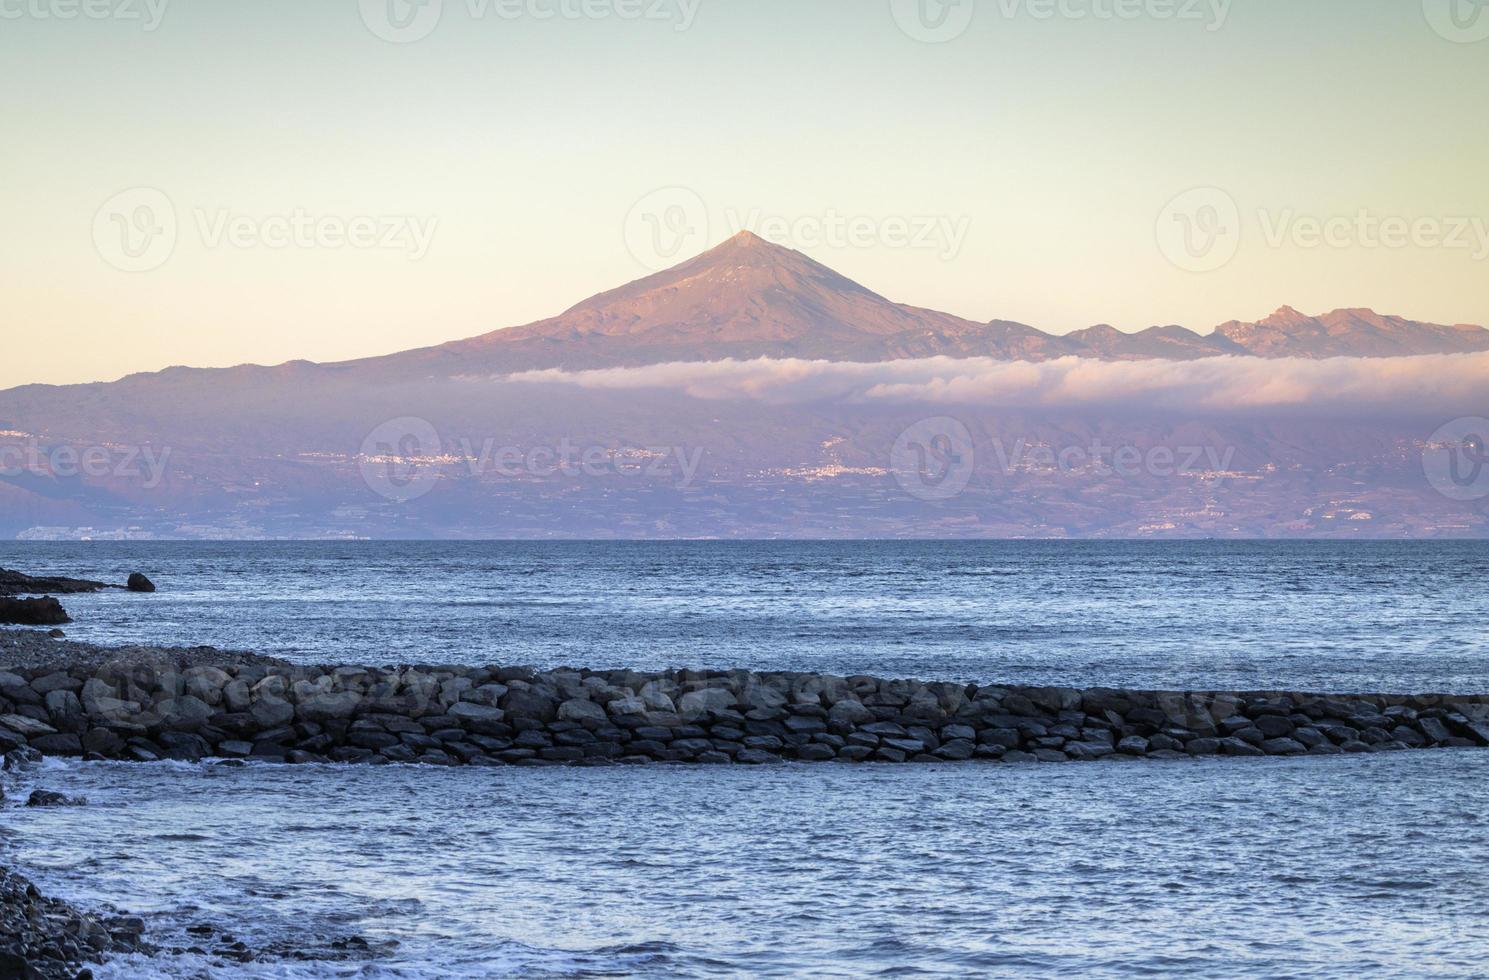 El teide volcano viewed from beach in tenerife spain photo